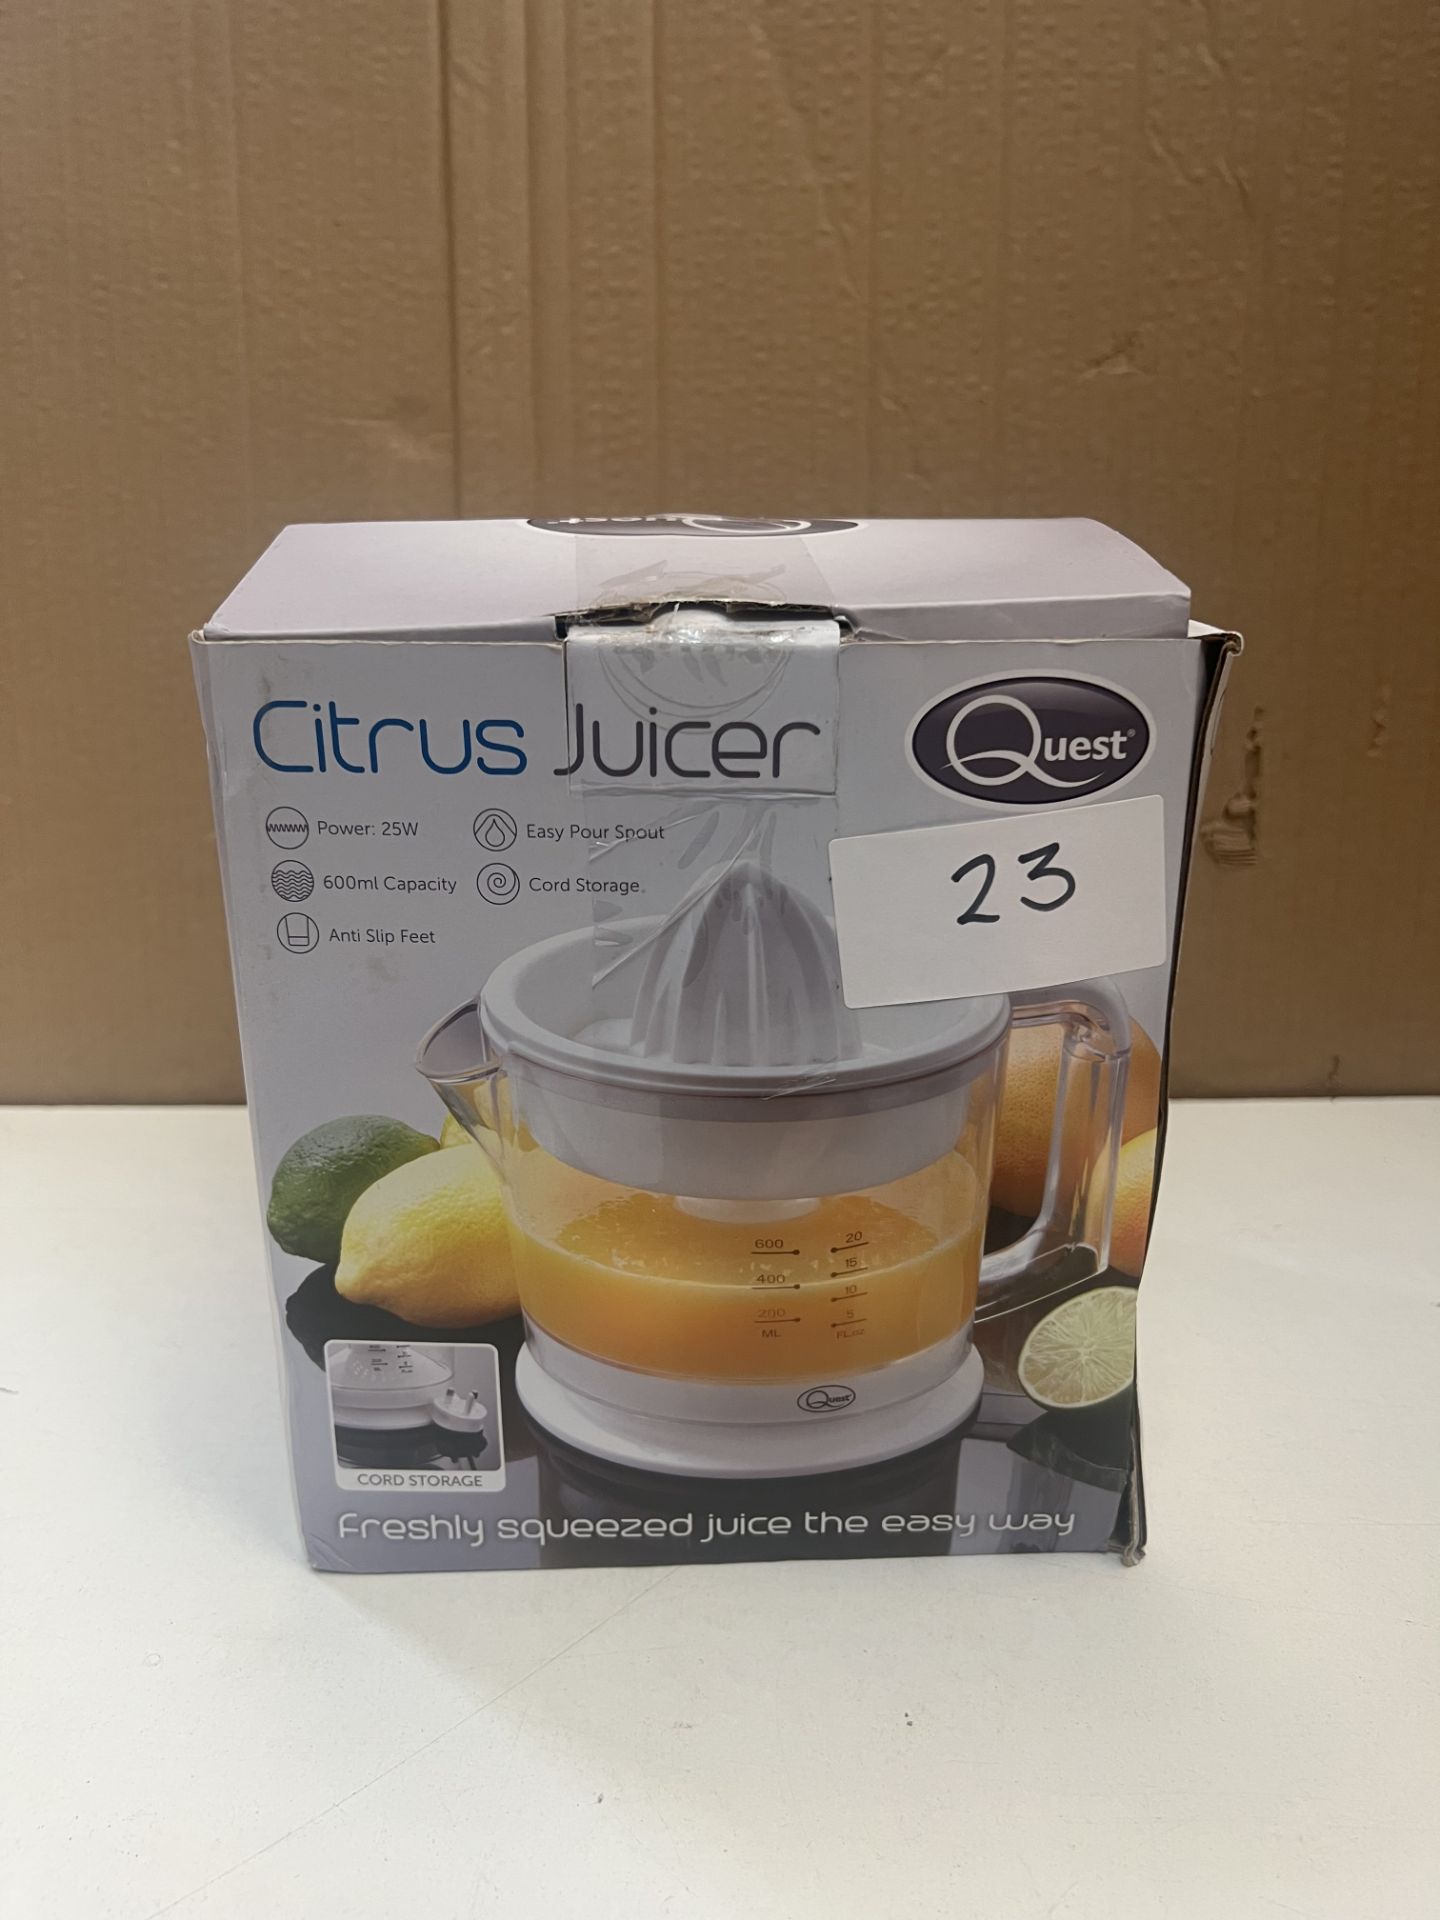 Quest Citrus Juicer. RRP £24.99 - GRADE U